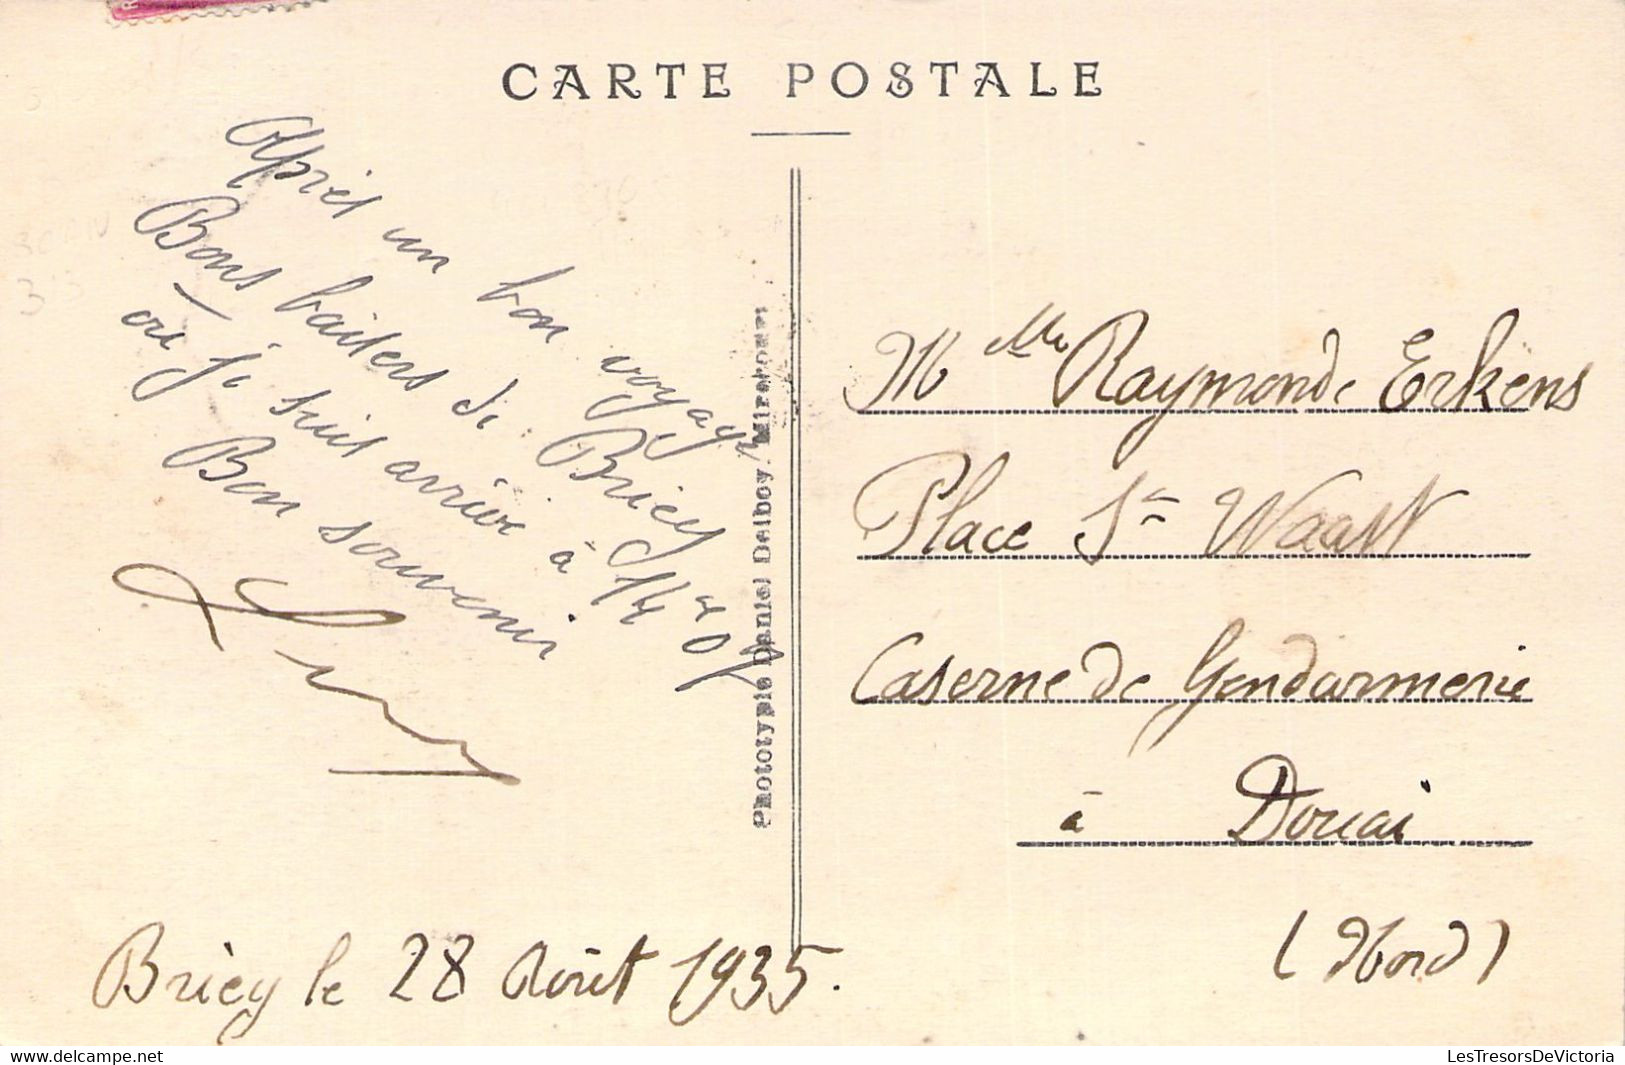 FRANCE - 54 - BRIEY - Vue Générale - DD - Carte Postale Ancienne - Briey